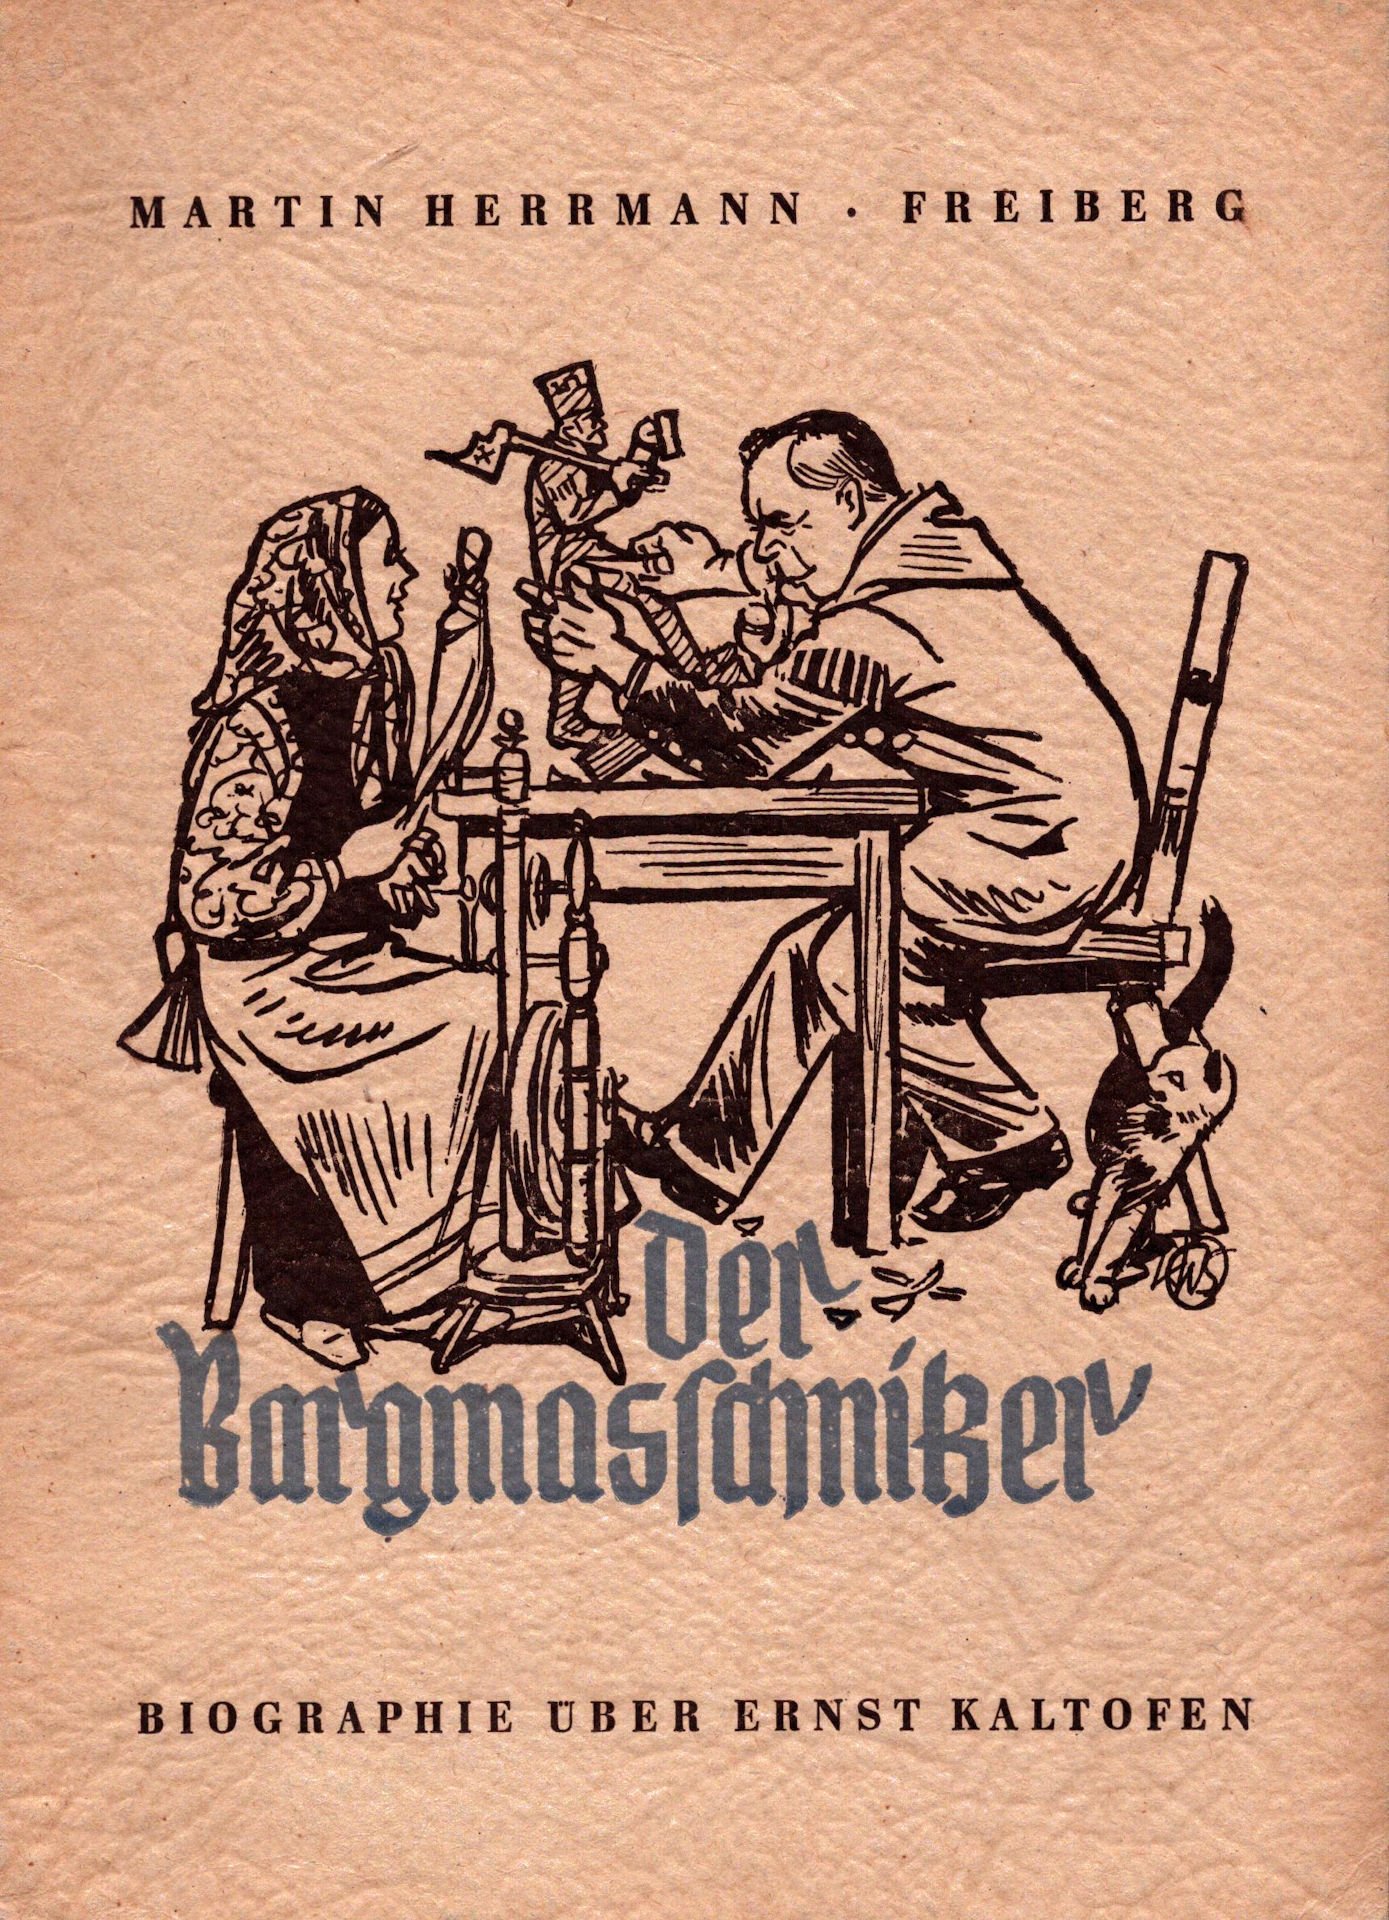 Originaltitel: Der Bargmaschnitzer ; Untertitel: Biographie über Ernst Kaltofen (Saxonia-Freiberg-Stiftung CC BY-NC-SA)